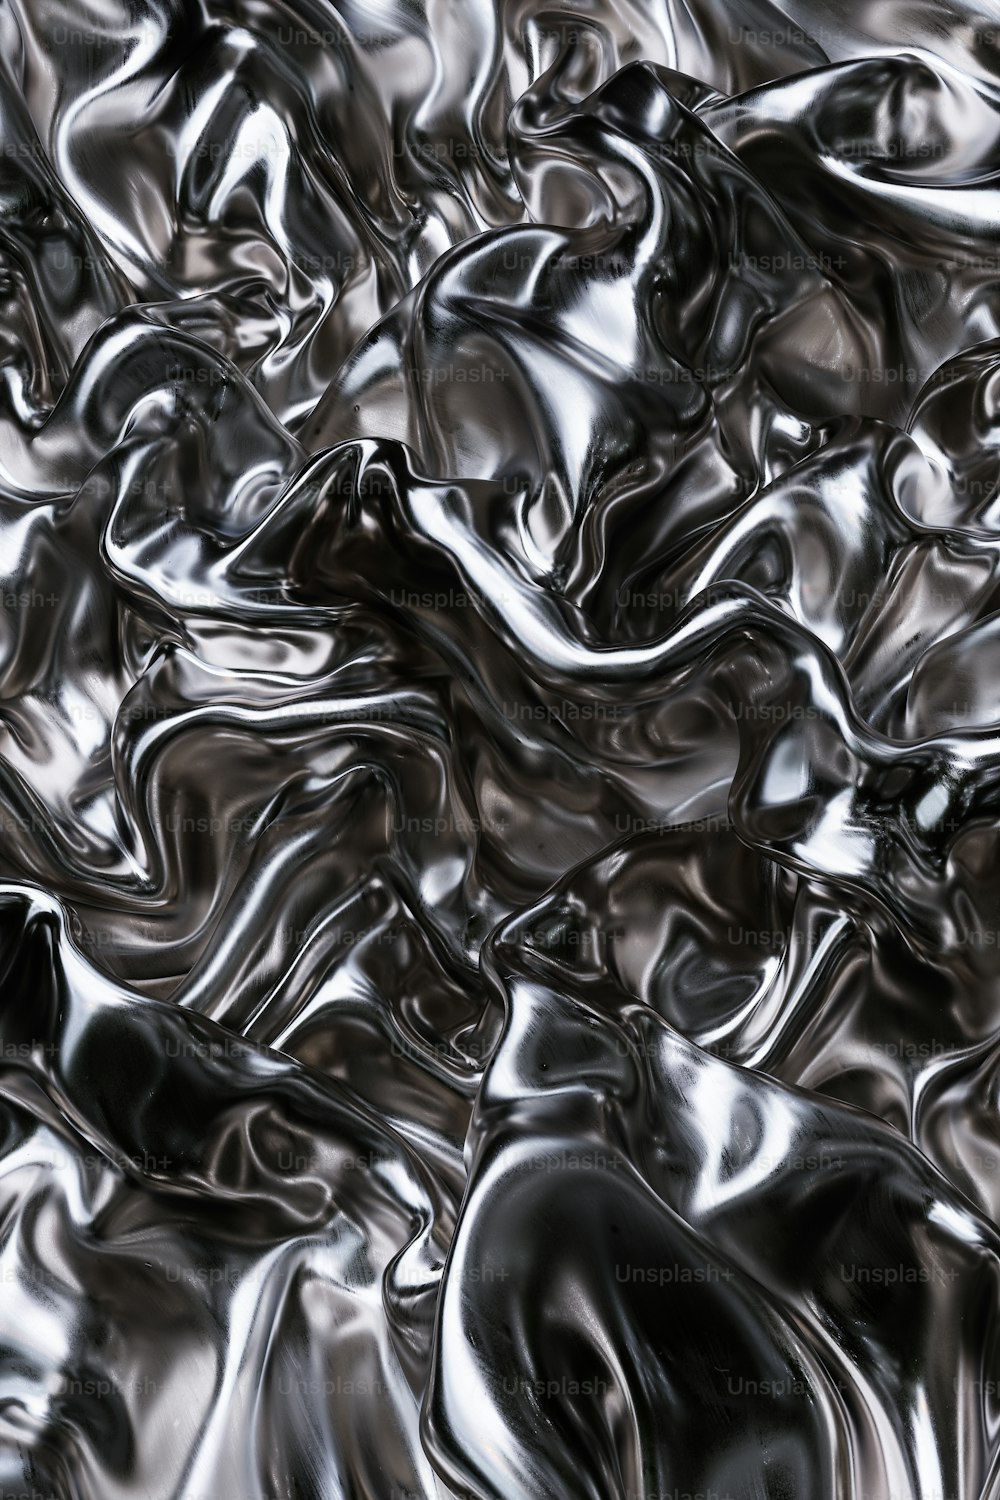 Ein Schwarz-Weiß-Foto von einem Haufen glänzendem Material